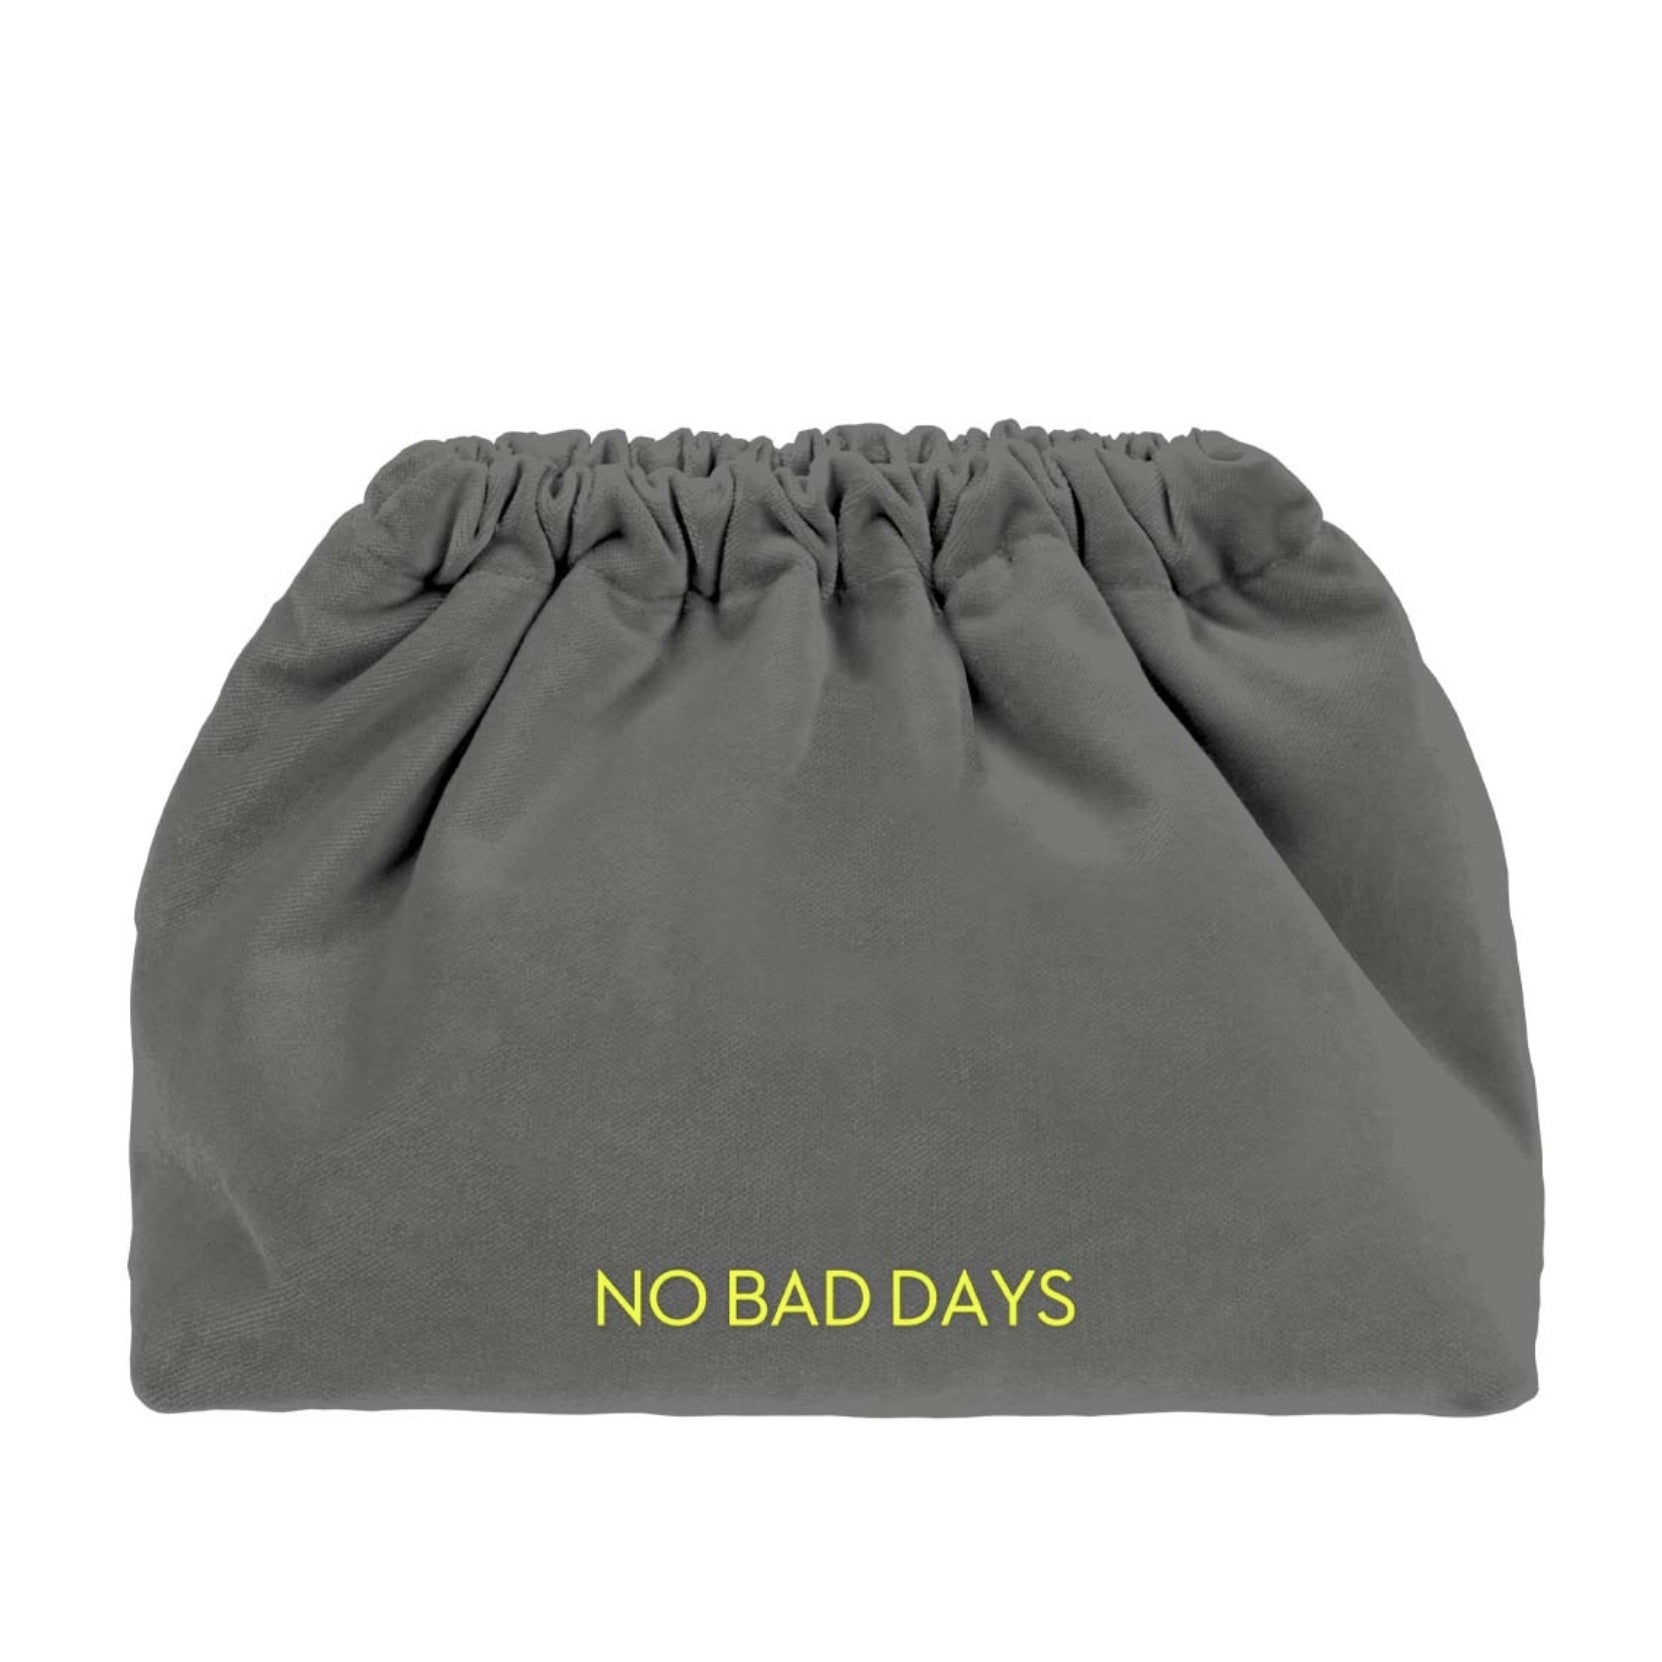 VELVET CLUTCH BAG - NO BAD DAYS